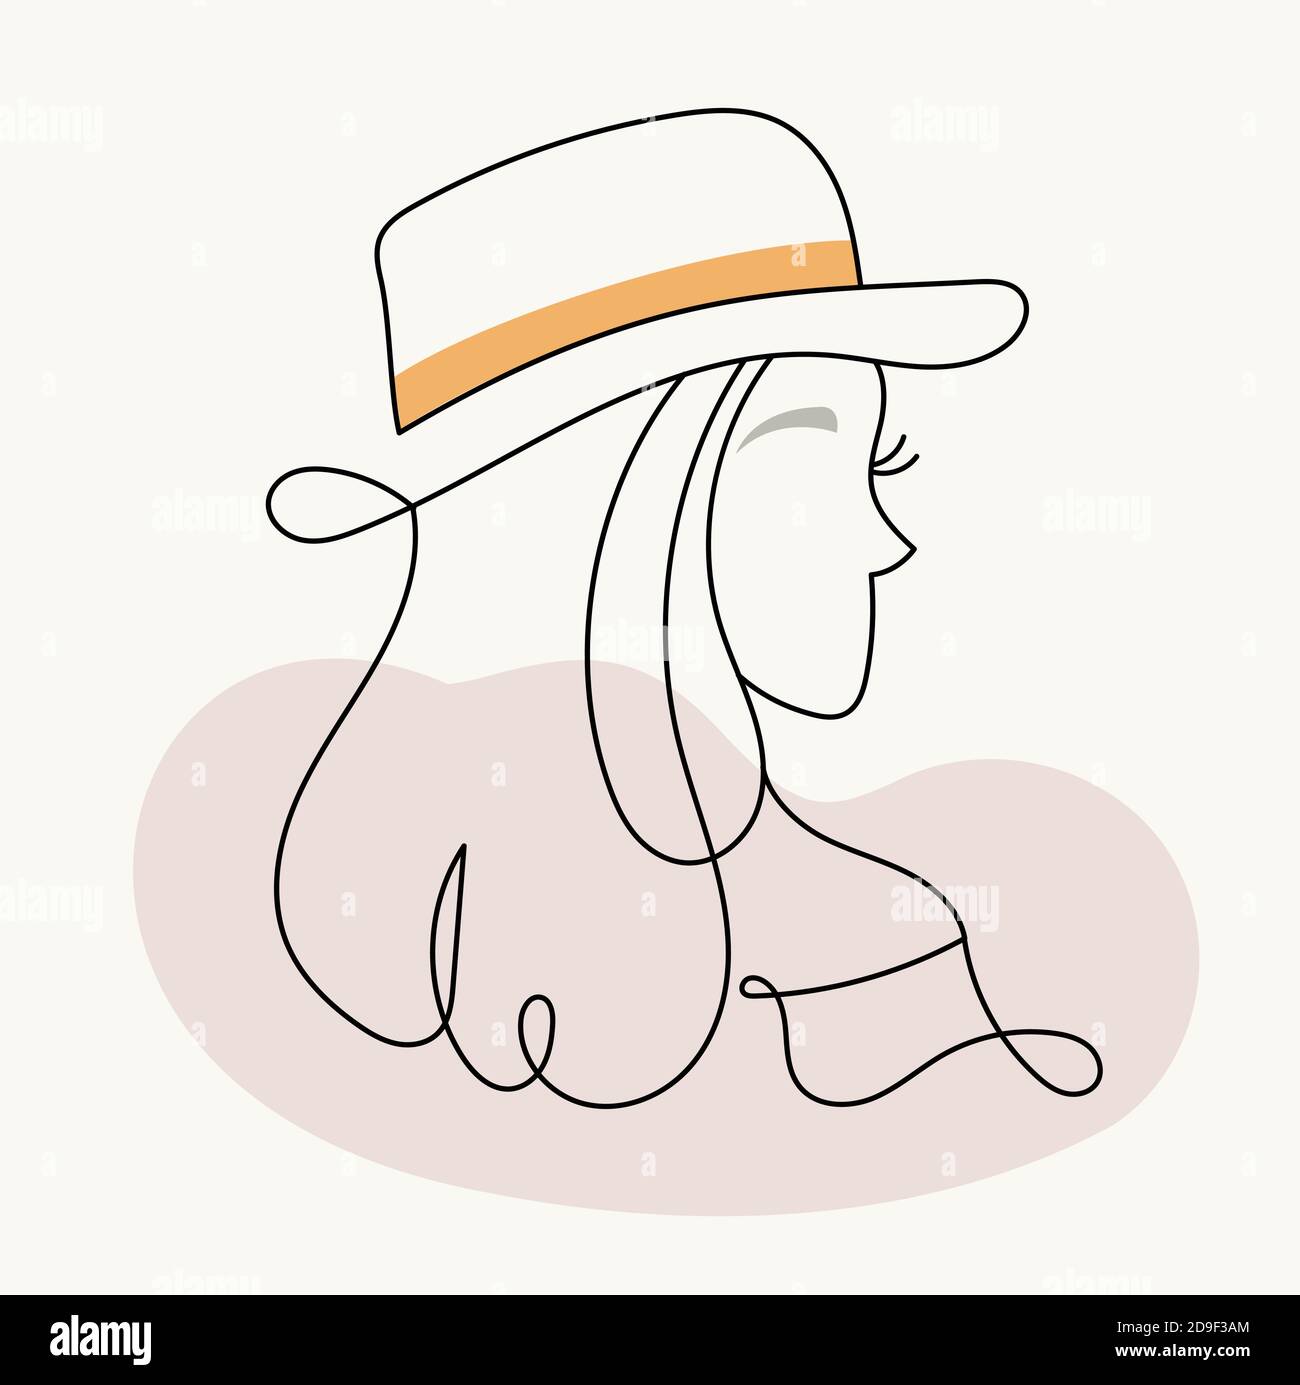 Visage moderne abstrait.Silhouette de fille dans un chapeau dans un style linéaire. Couleurs pastel. Affiche de mode dans le style du minimalisme. Contour. Vecteur isolé Illustration de Vecteur